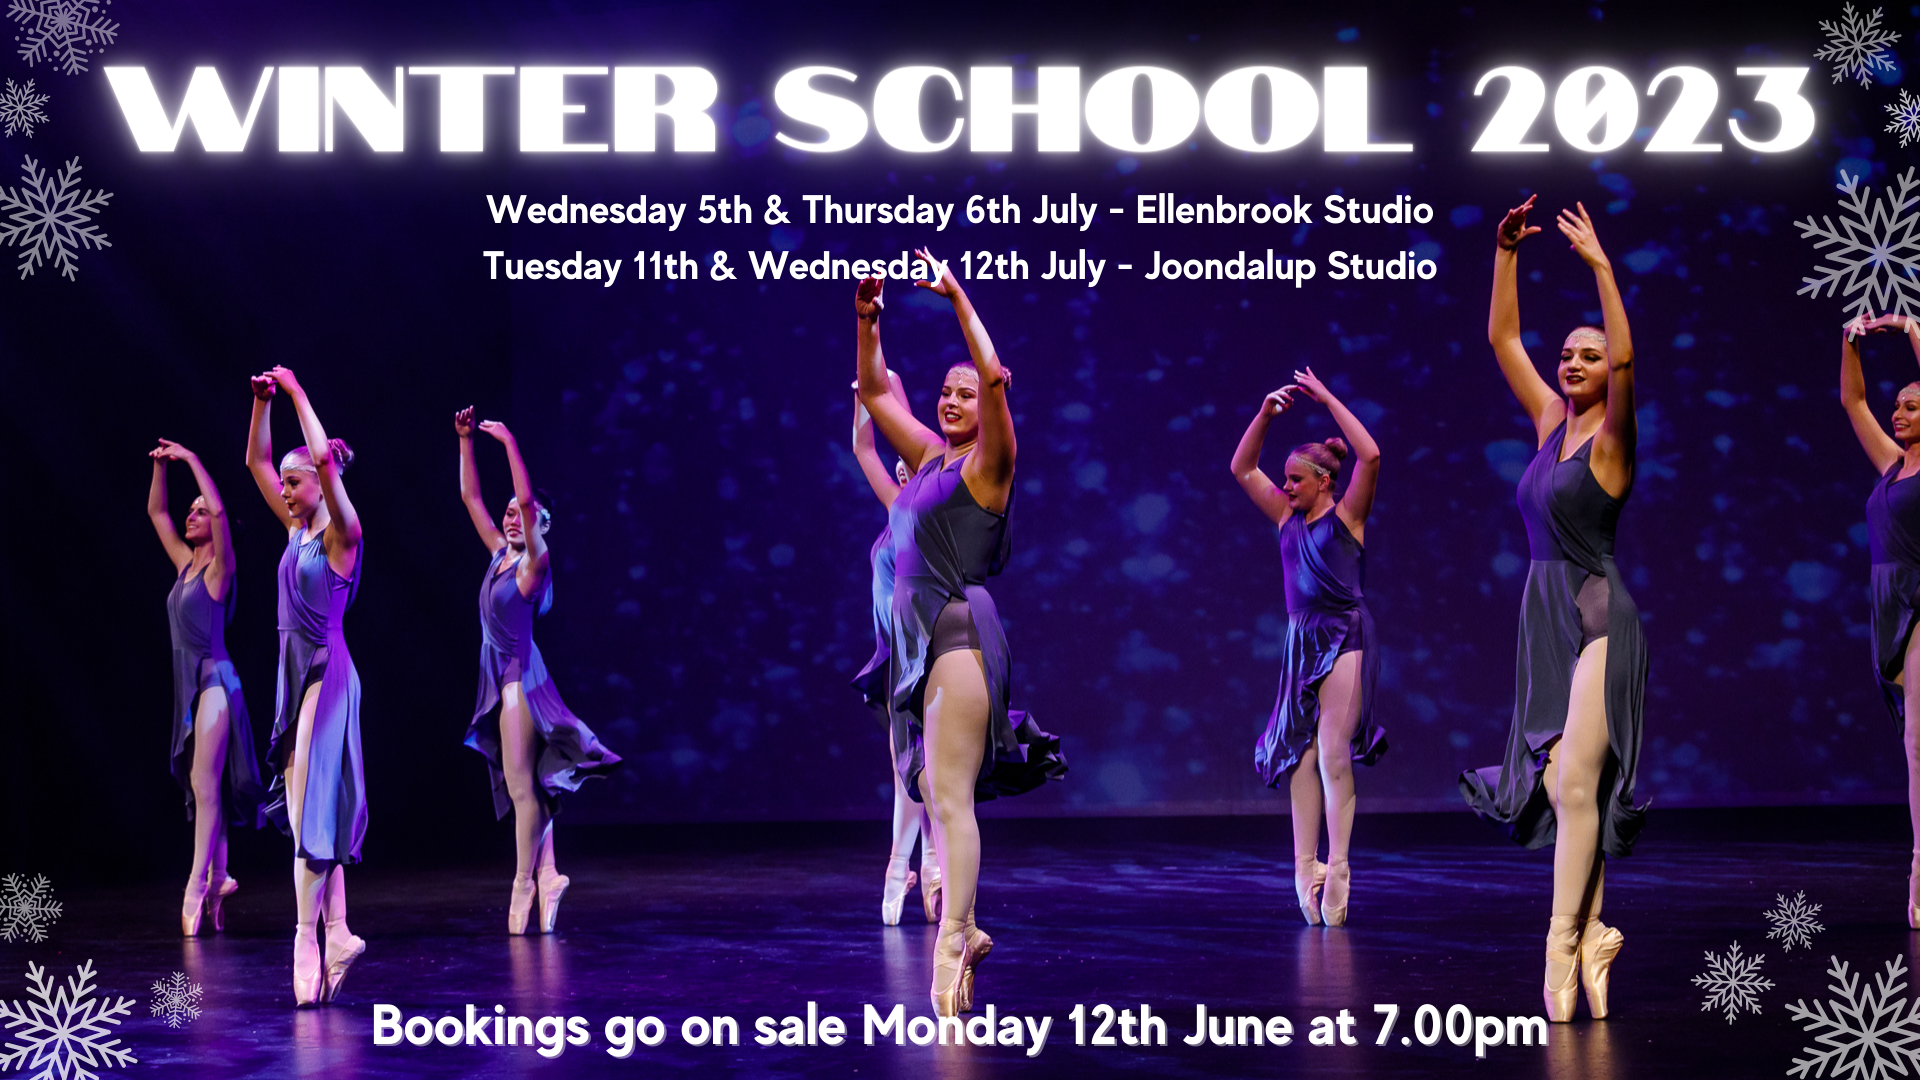 Winter School 2023 Ballet Classes in Ellenbrook